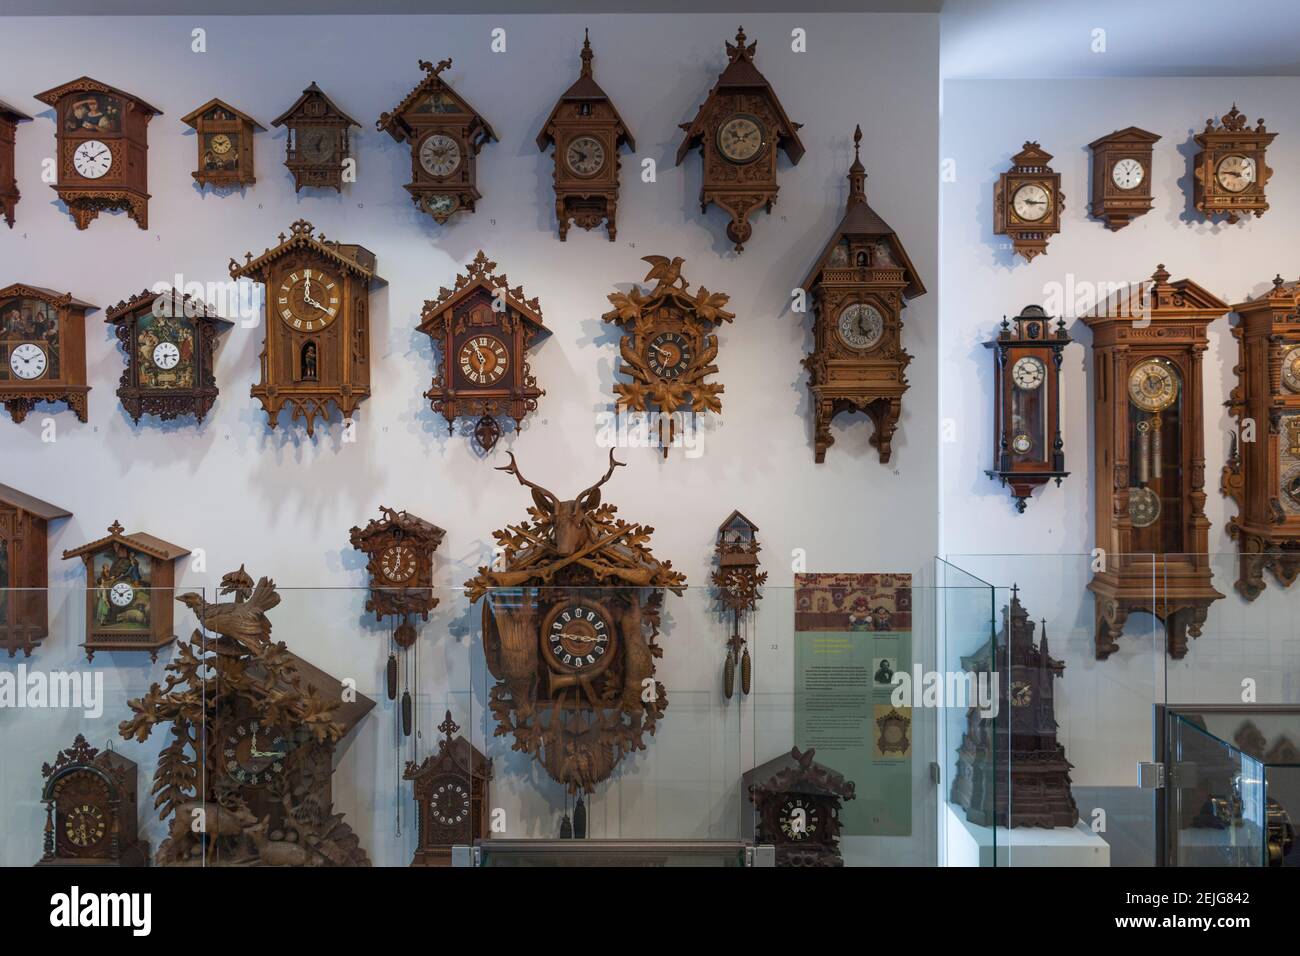 Exposition d'horloges couckoo au Musée allemand de l'horloge, Furtwangen im Schwarzwald, Forêt Noire, Bade-Wurtemberg, Allemagne Banque D'Images